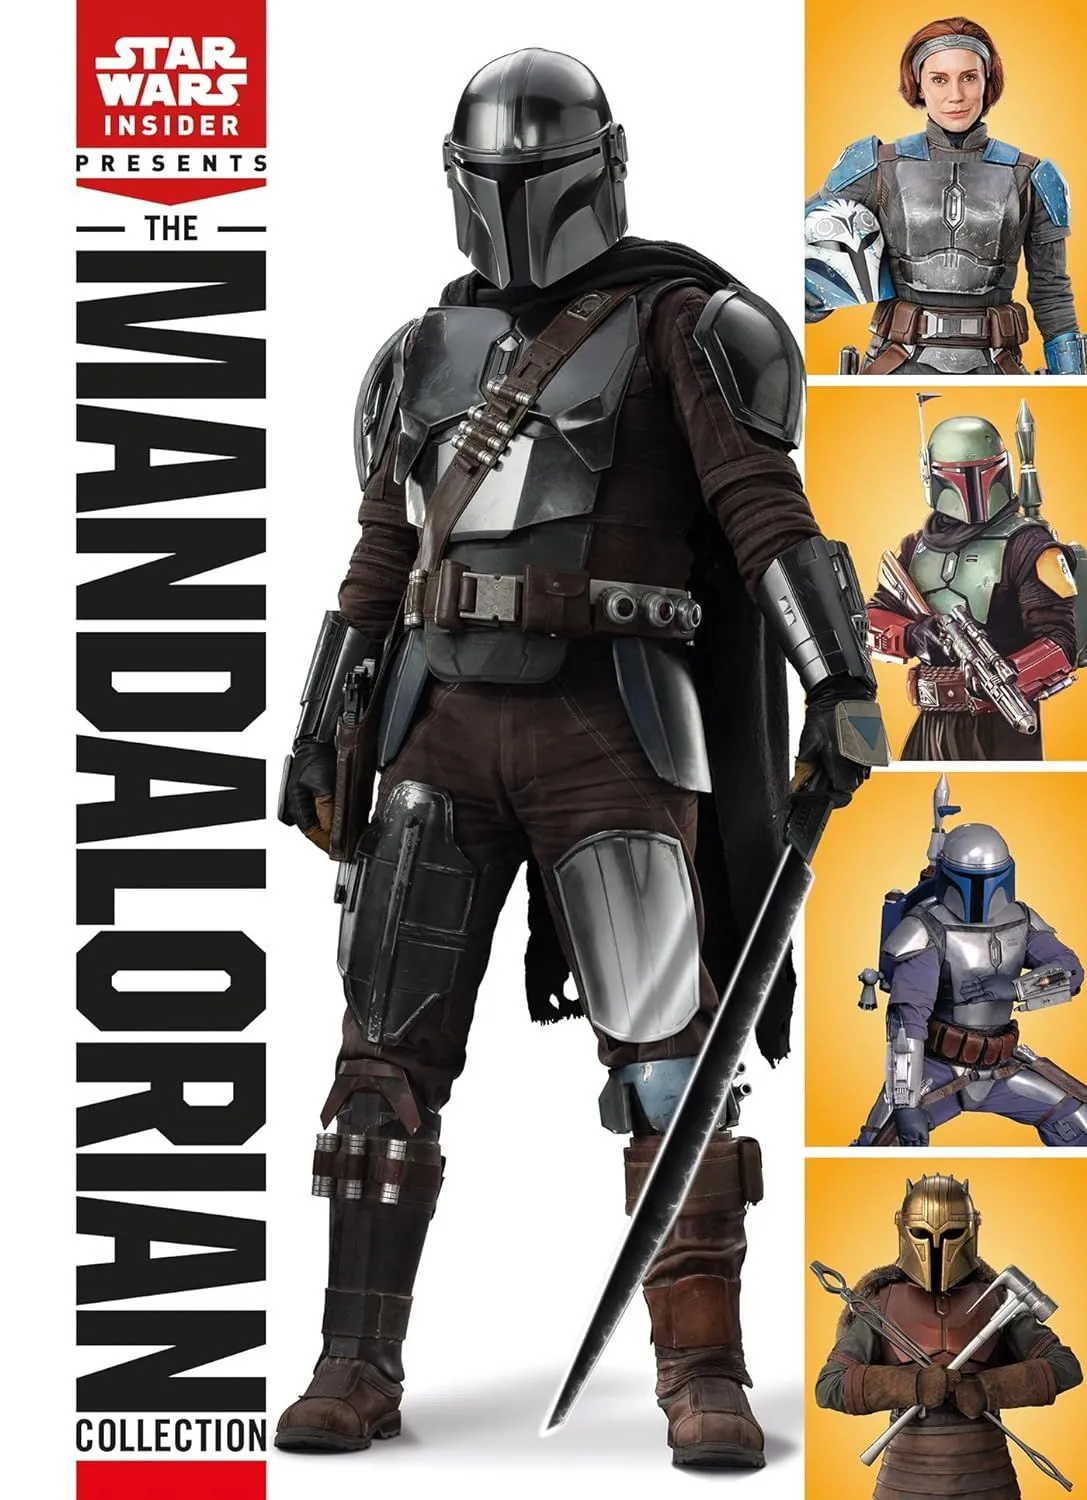 Cover des Buches Star Wars: The Mandalorian Collection, mit vier Fotos von behelmten, gepanzerten futuristischen Kriegern.